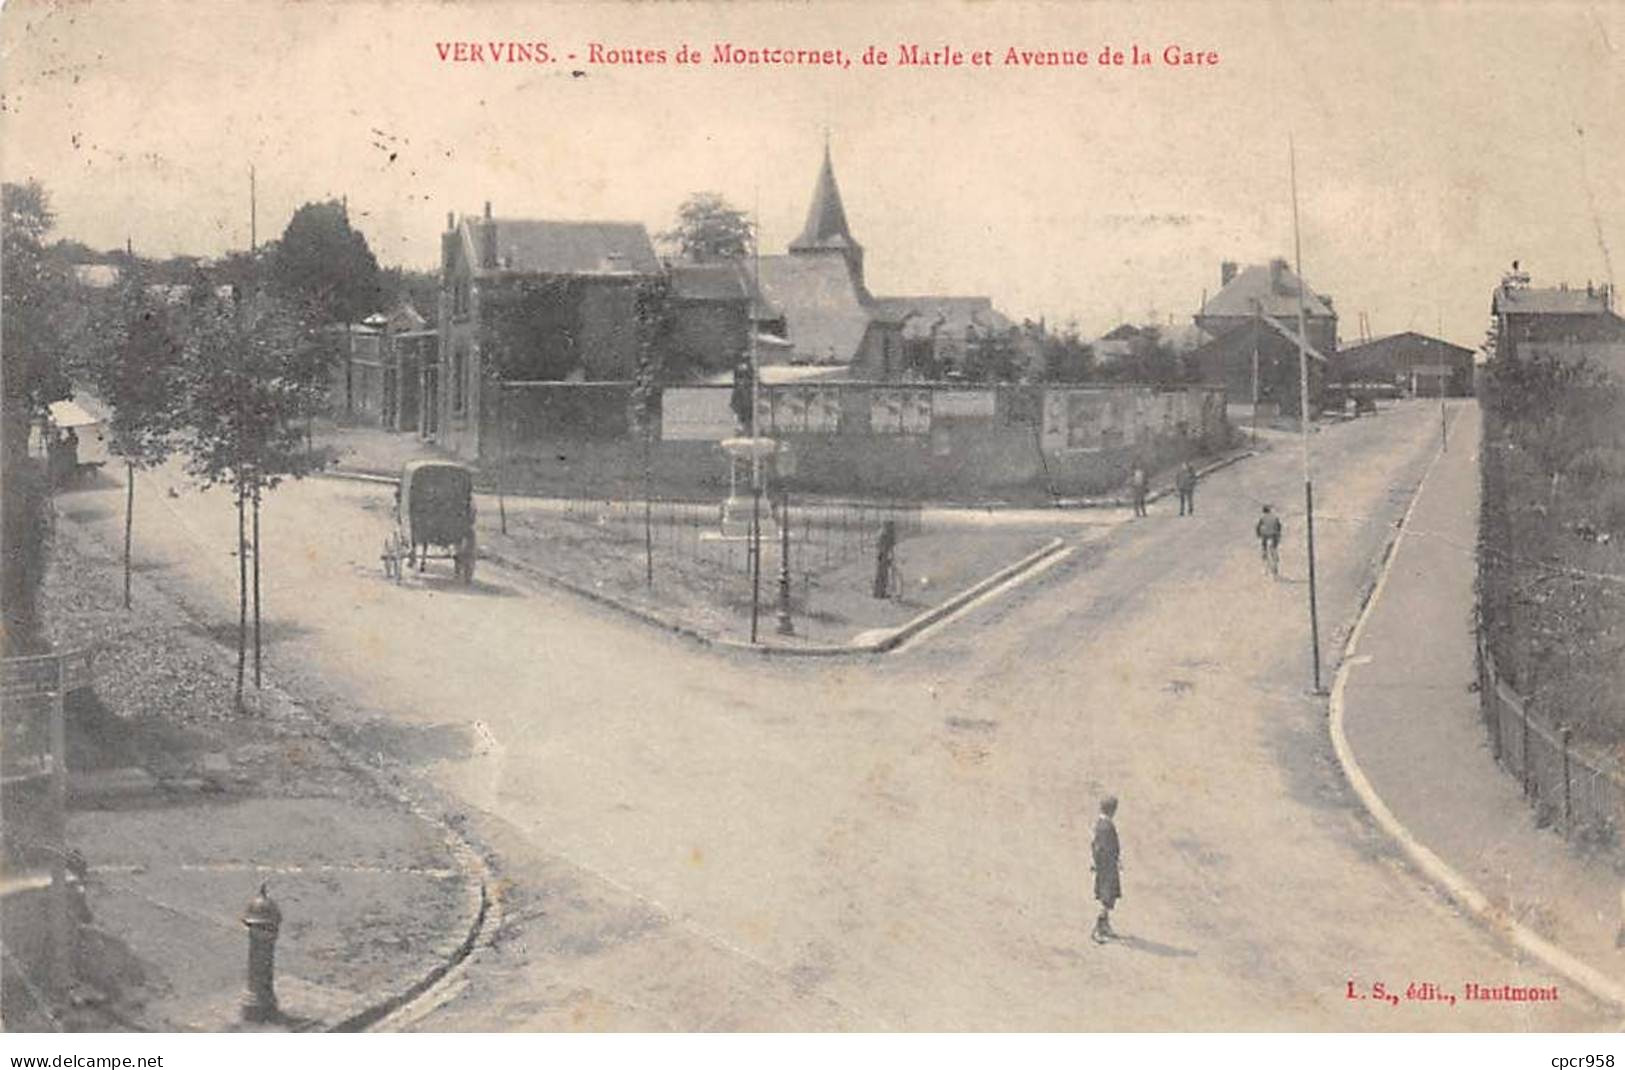 02 - VERVINS - SAN65140 - Routes De Montcornet - De Marle Et Avenue De La Gare - En L'état - Pli - Vervins